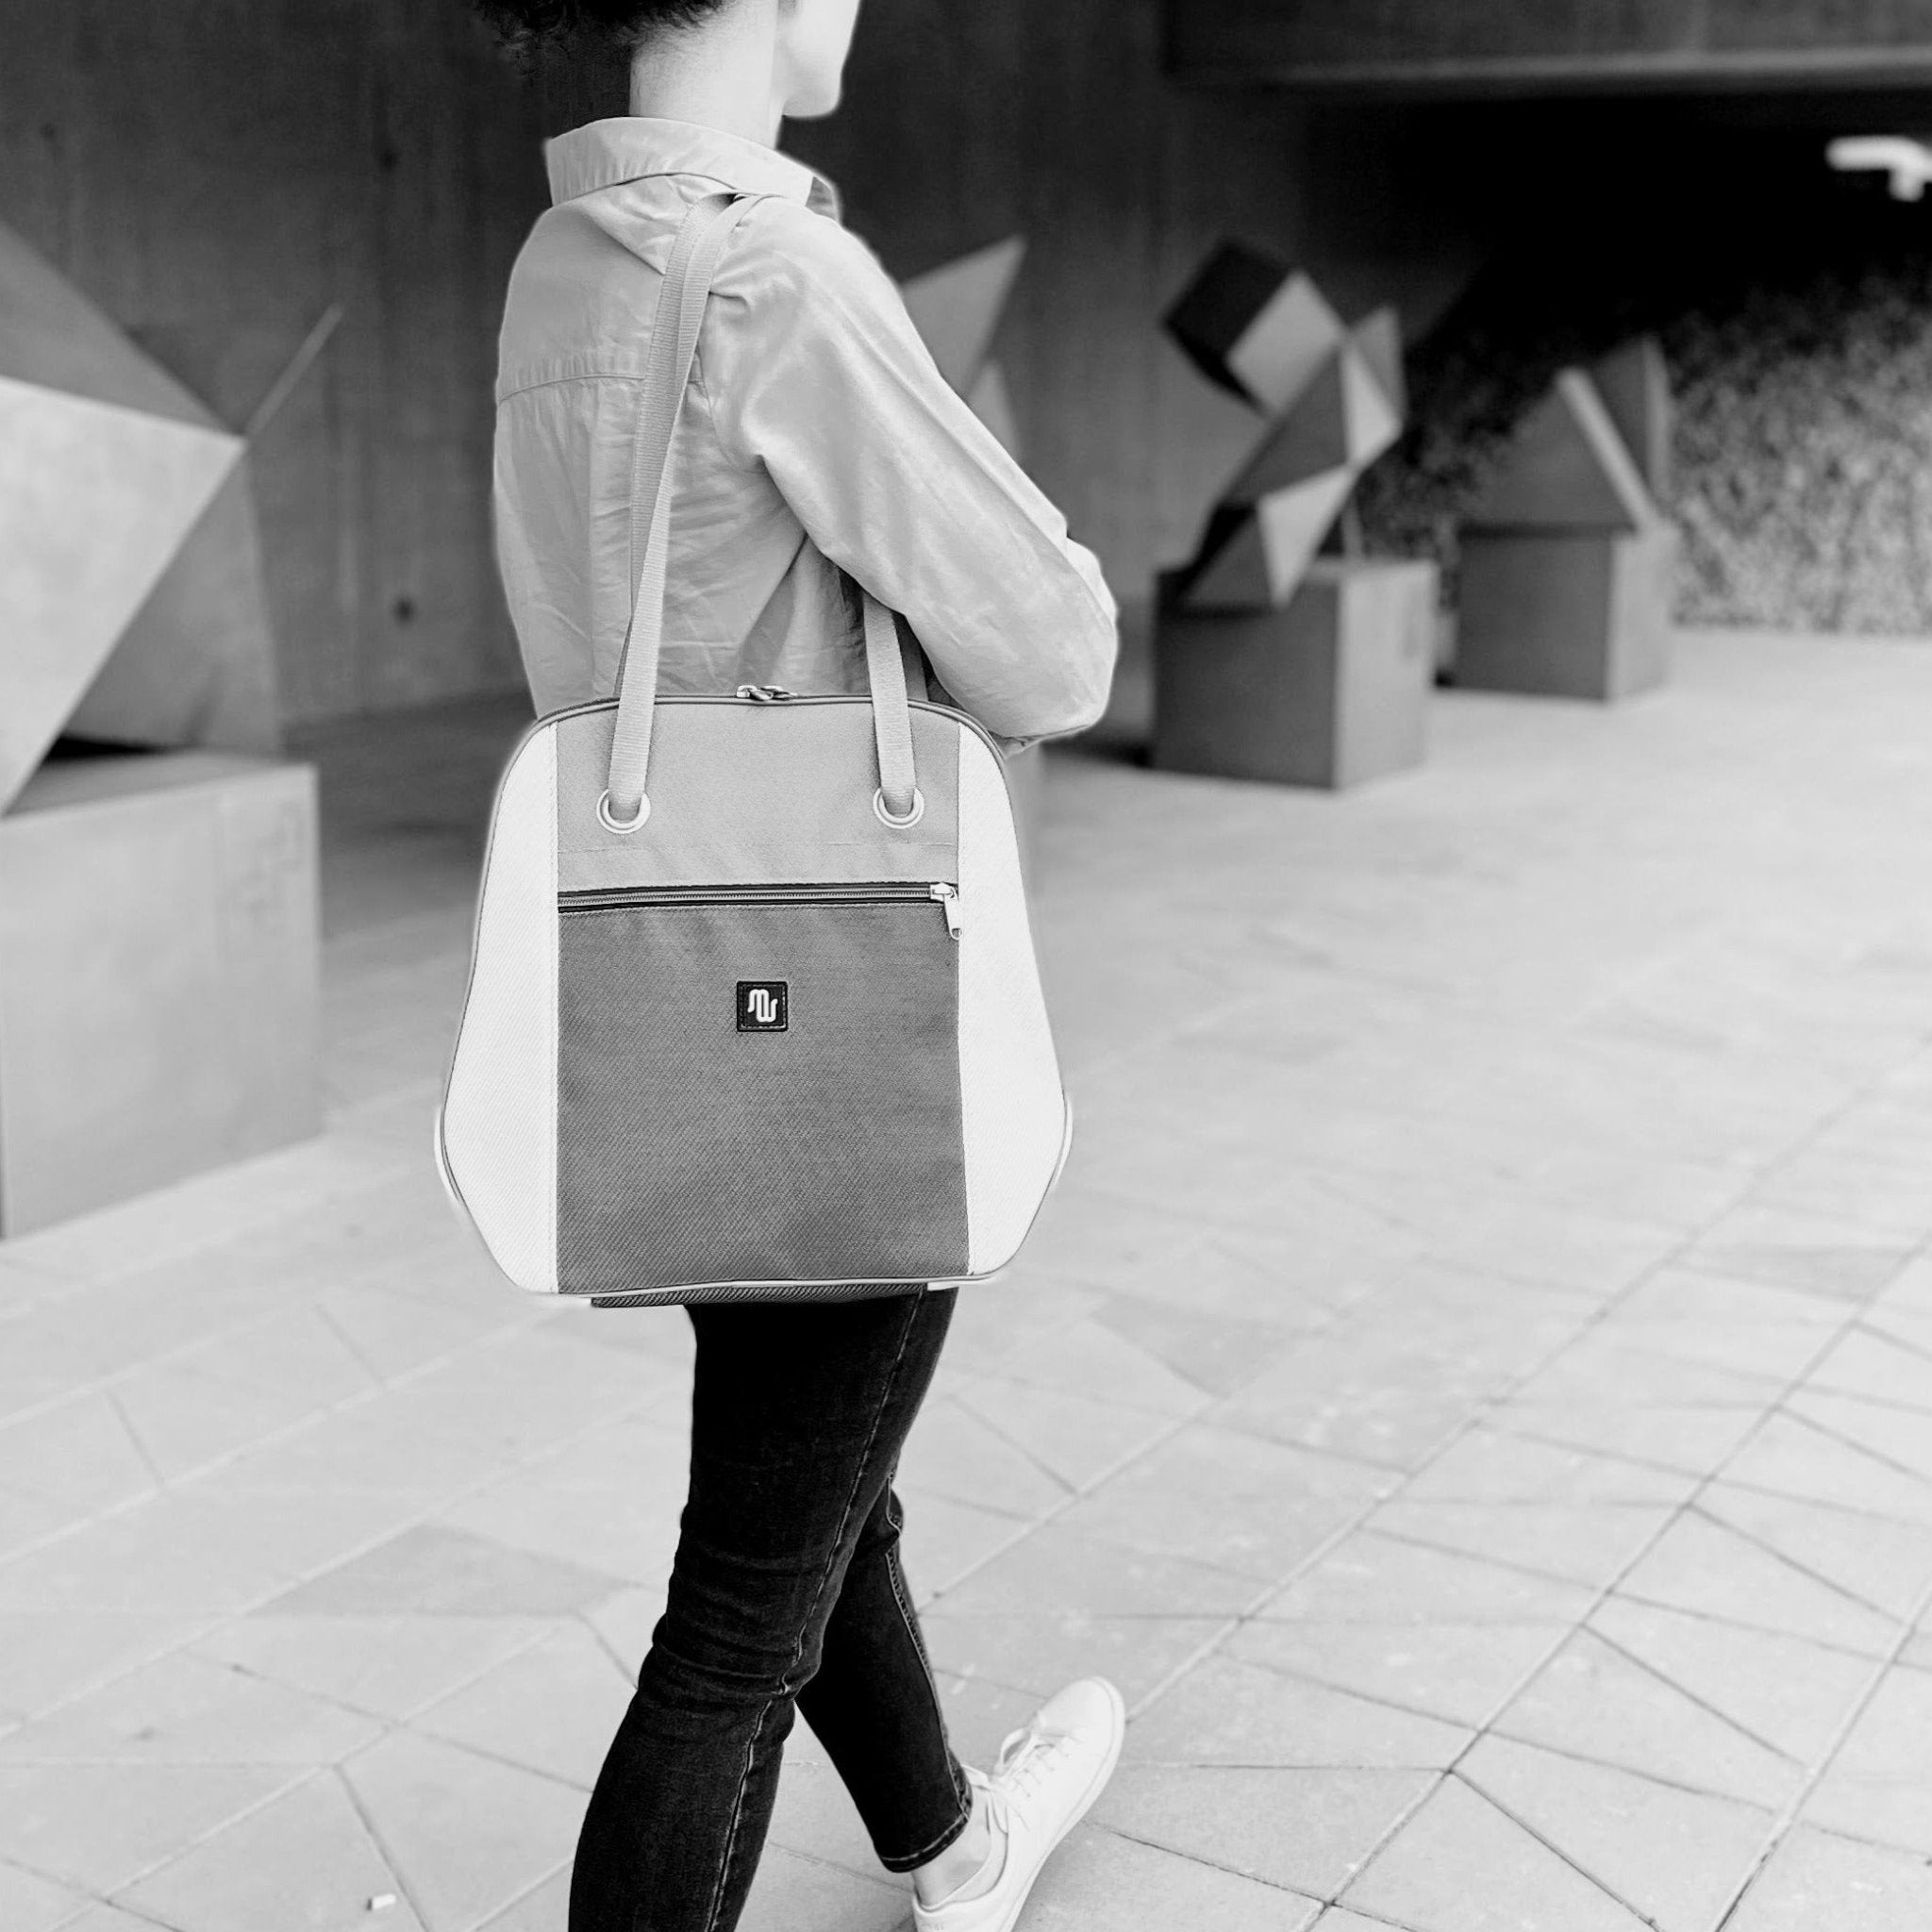 Shoulder Bag - NANA No. 055 - Shoulder bag - medencebag